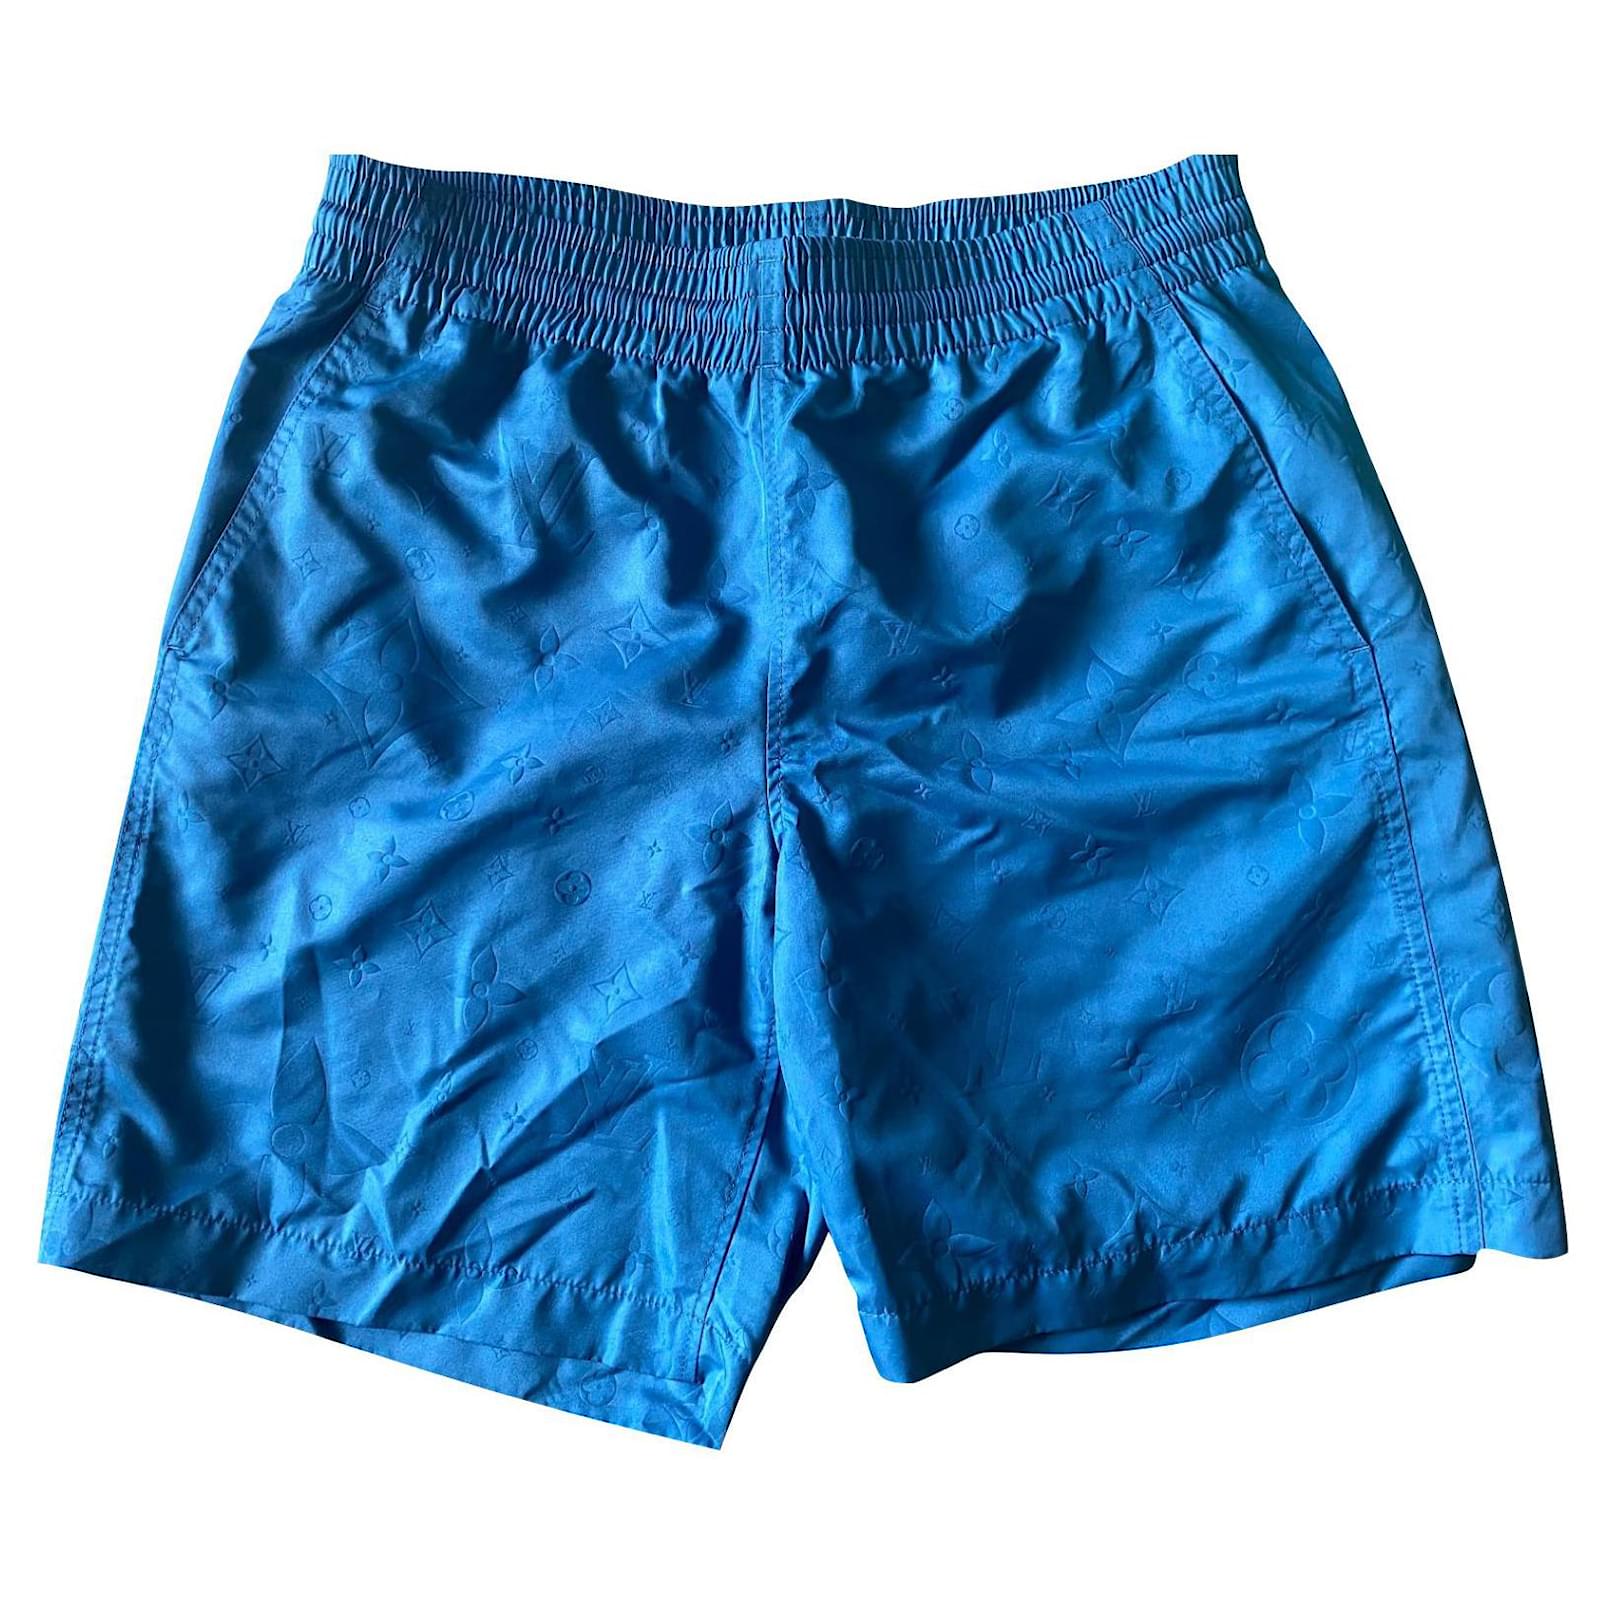 Louis Vuitton swim trunks short  Swim trunks, Trunks, Mens swim